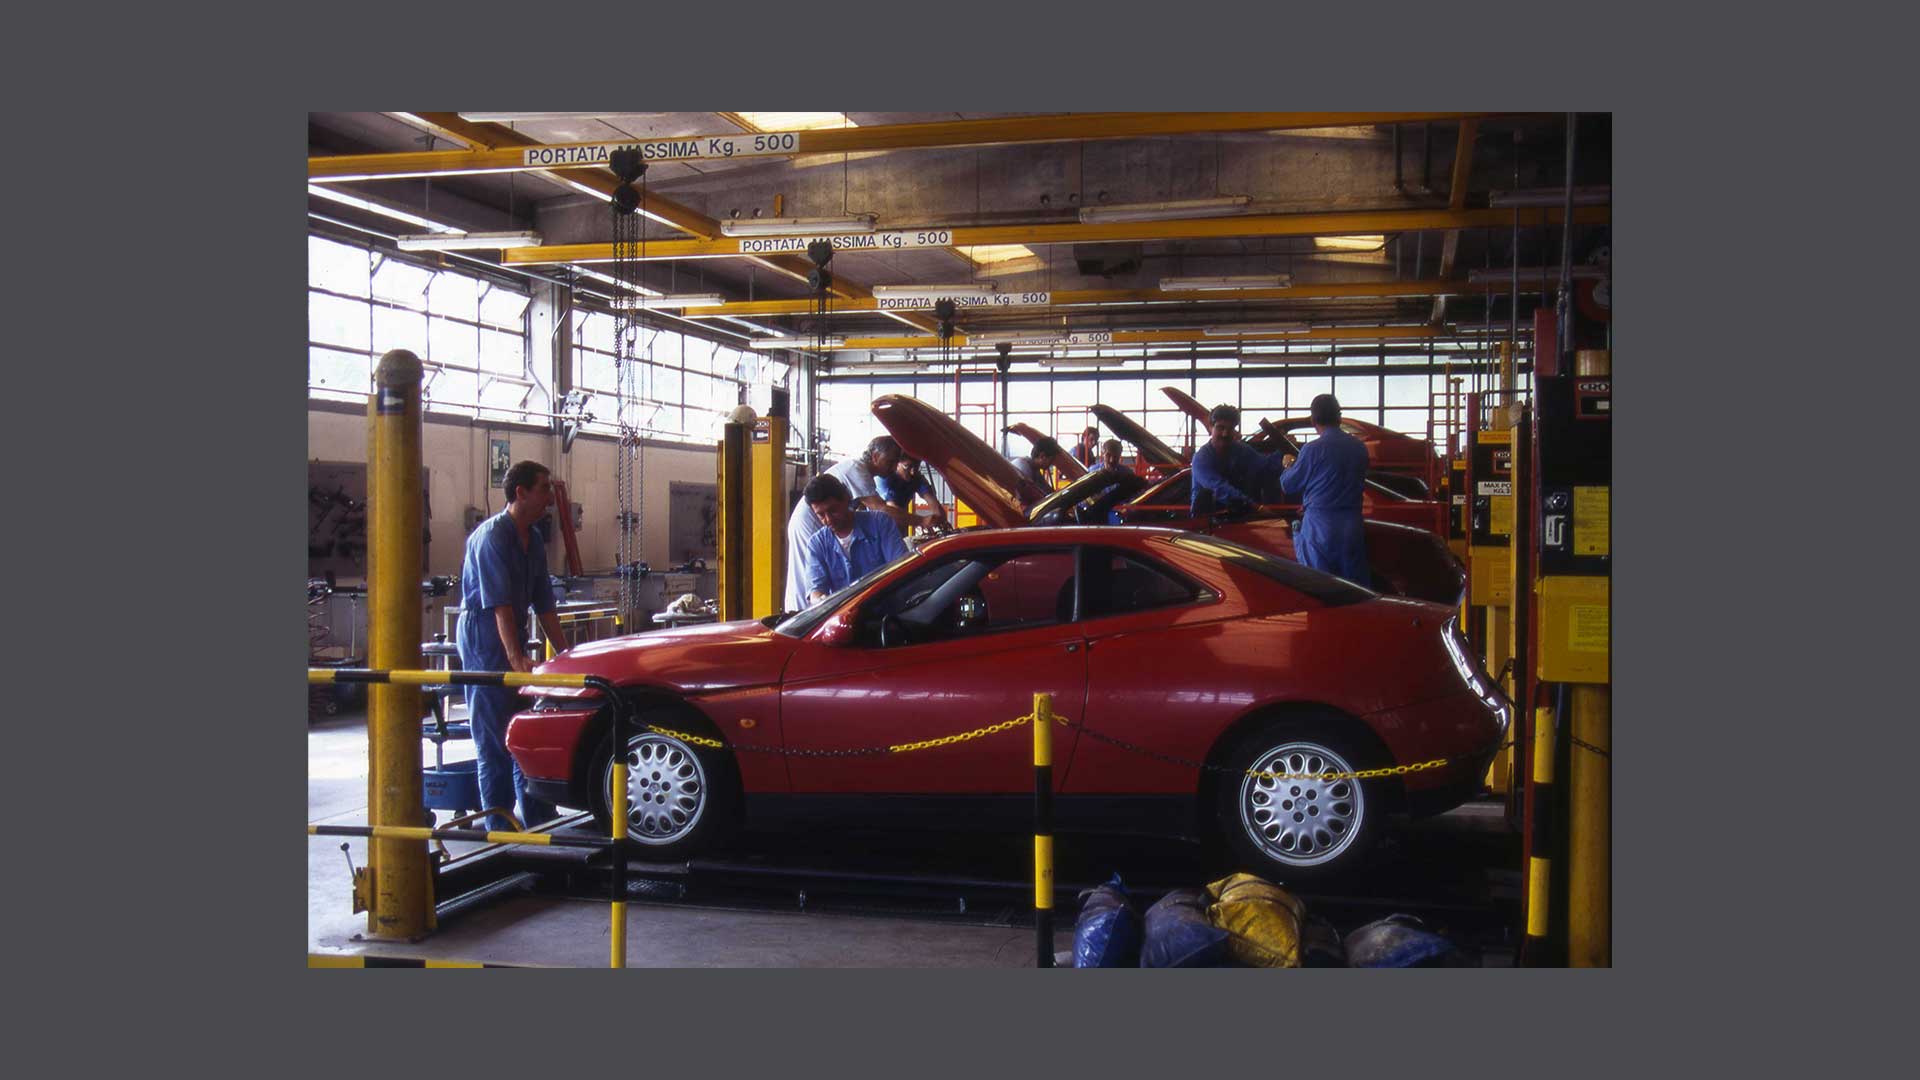 Photos of mechanics fixing a car